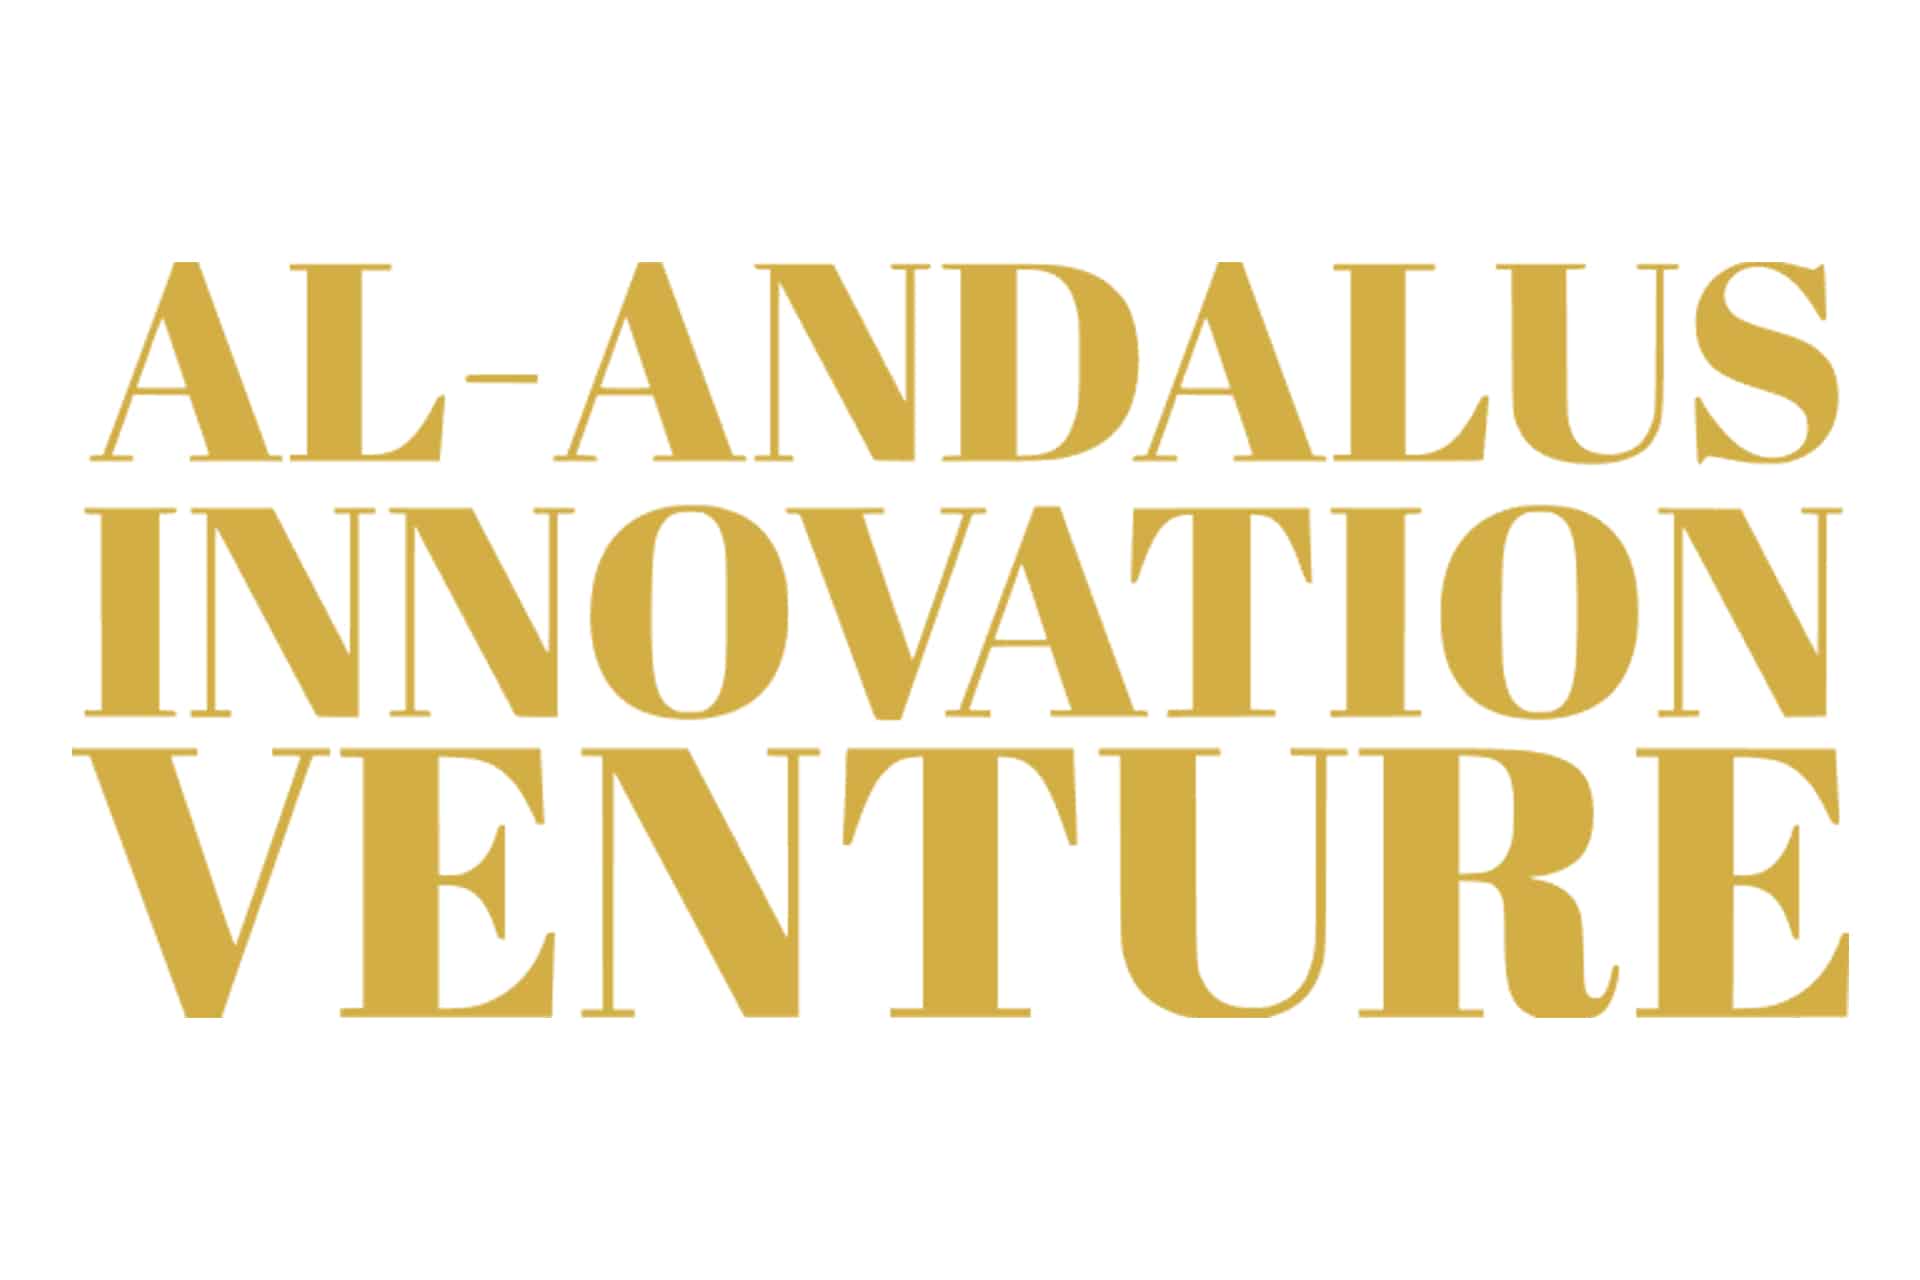 I edición de Al Adalus Innovation Venture